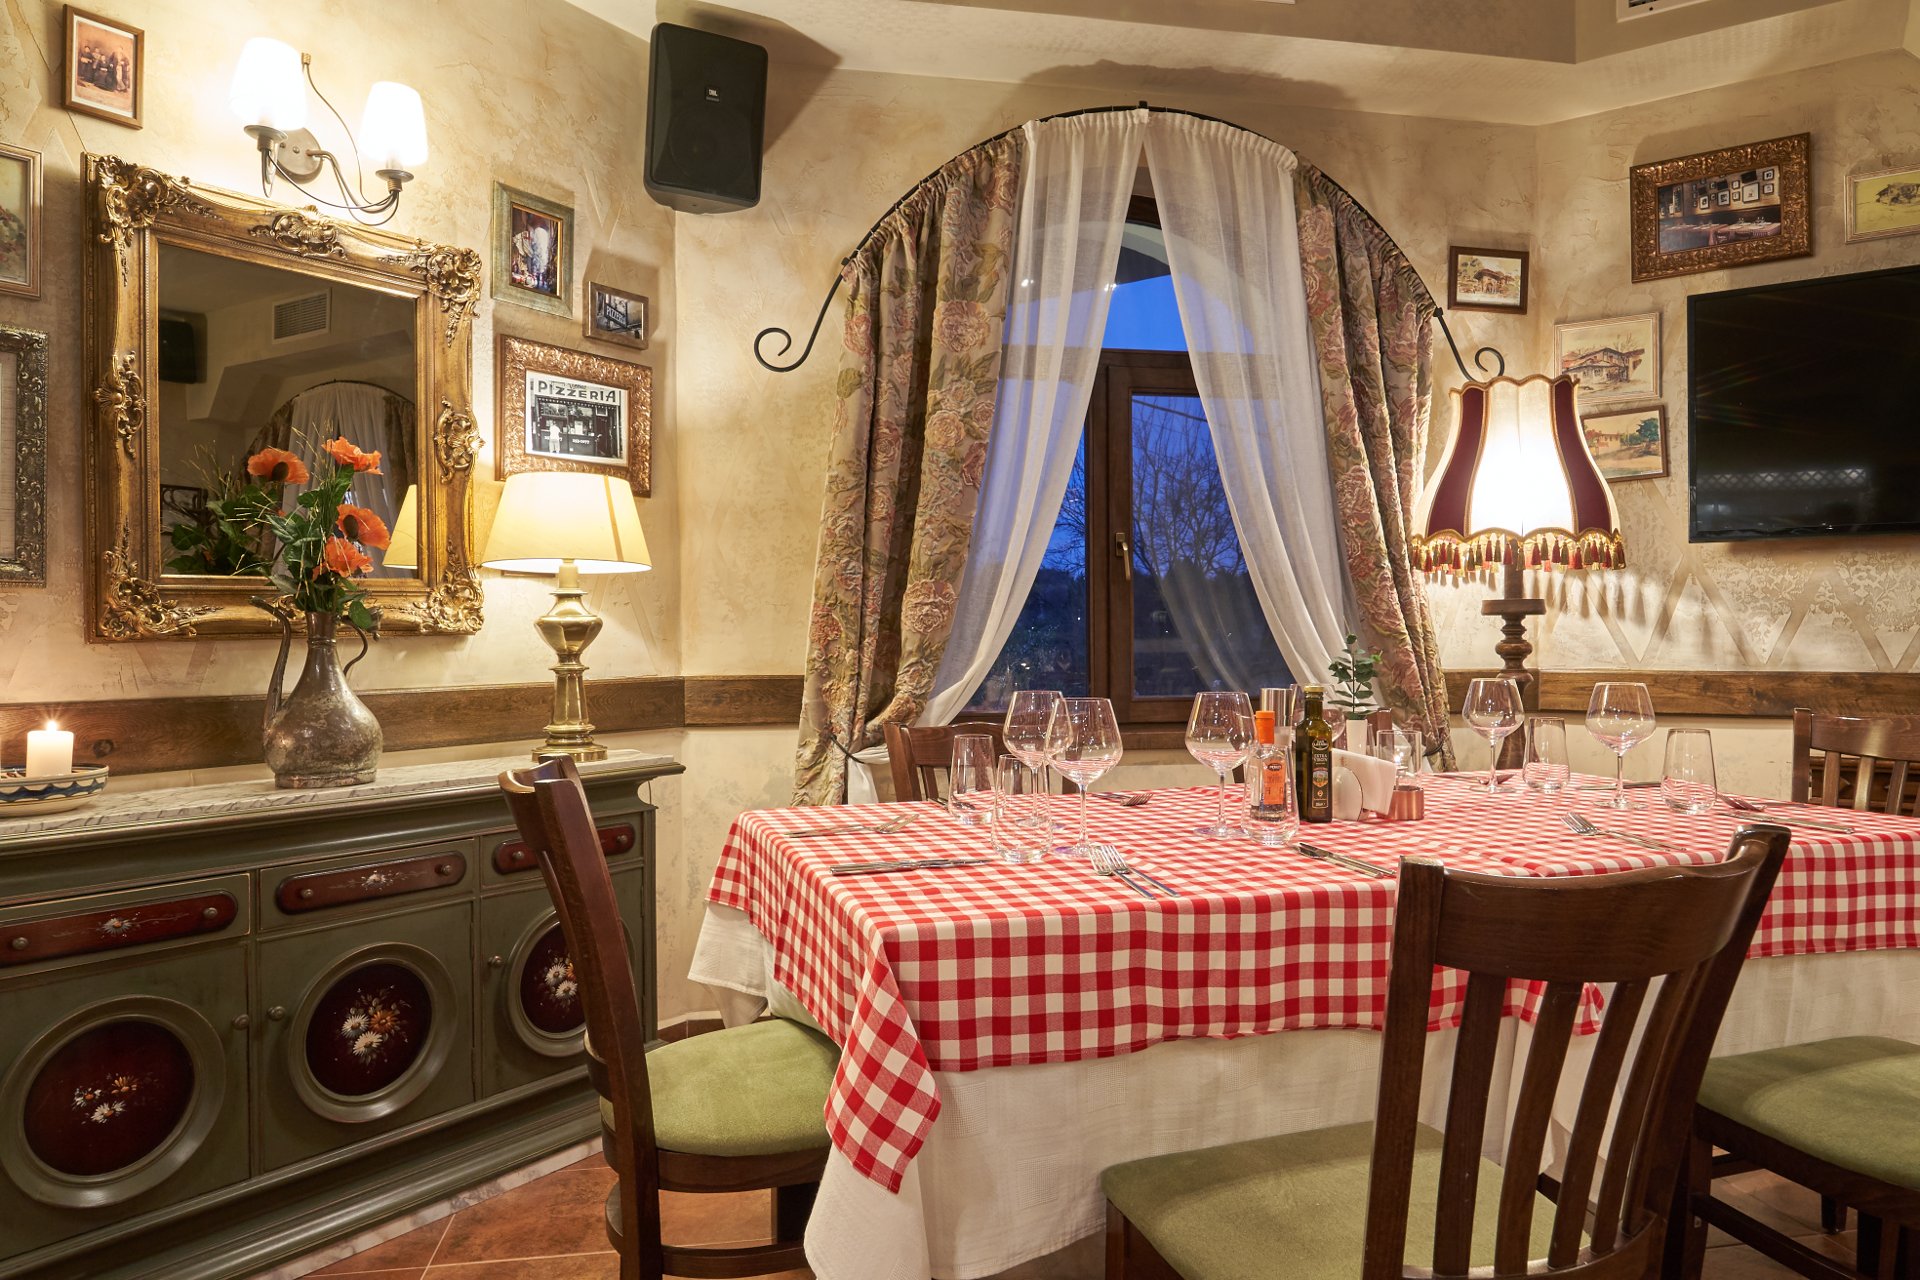 Primo Italian restaurant